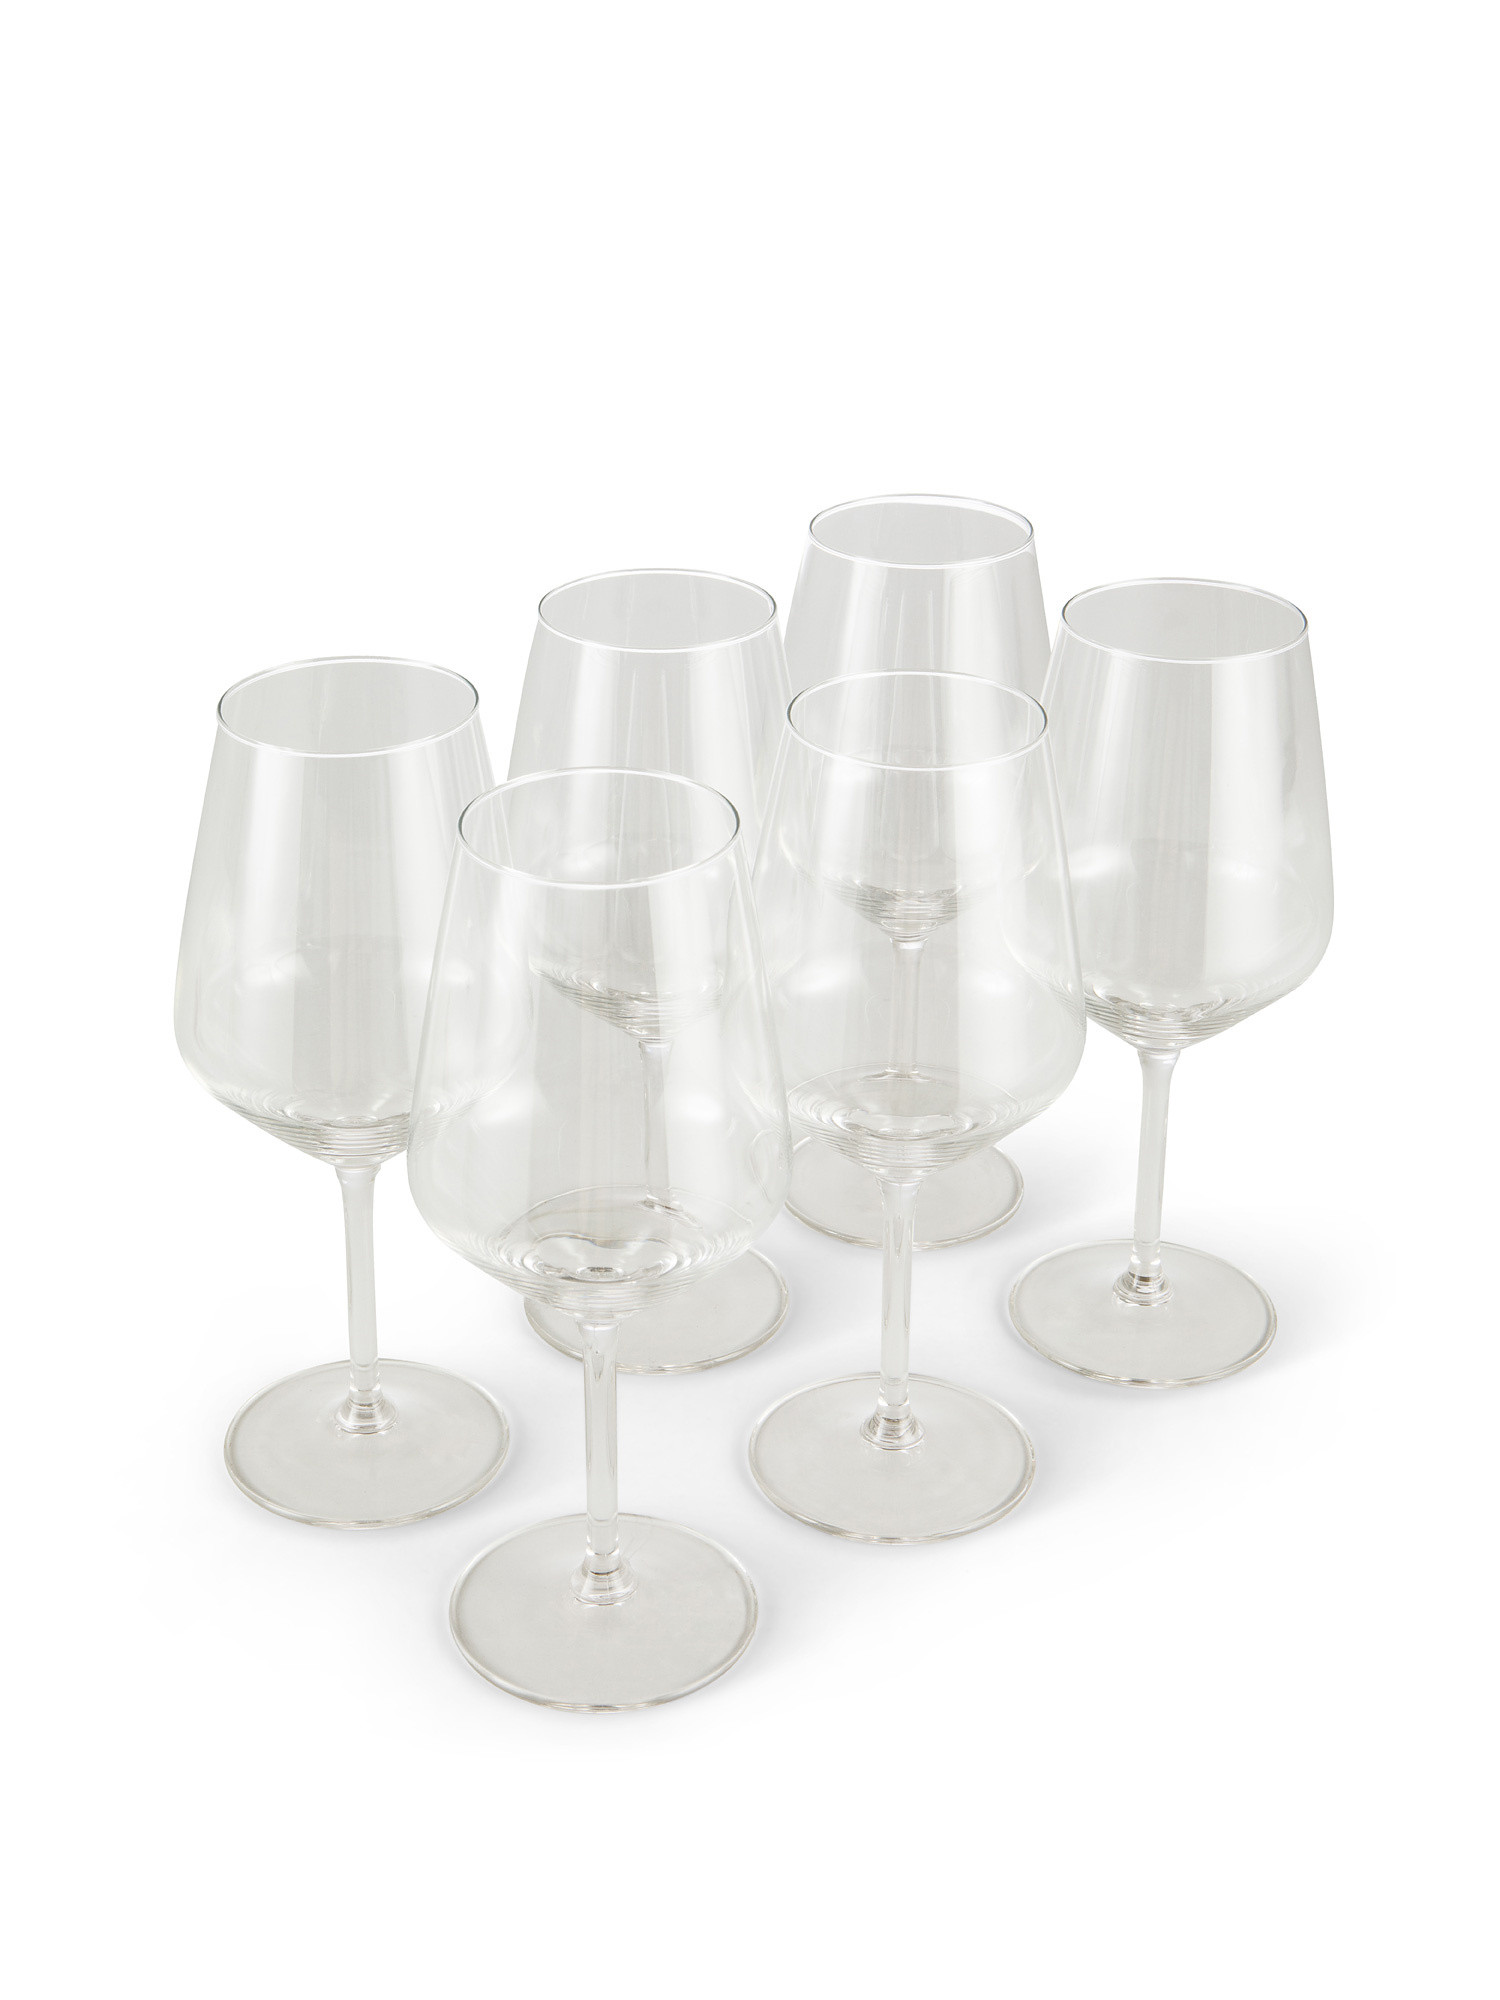 Set of 6 wine glasses 53cl, Transparent, large image number 0